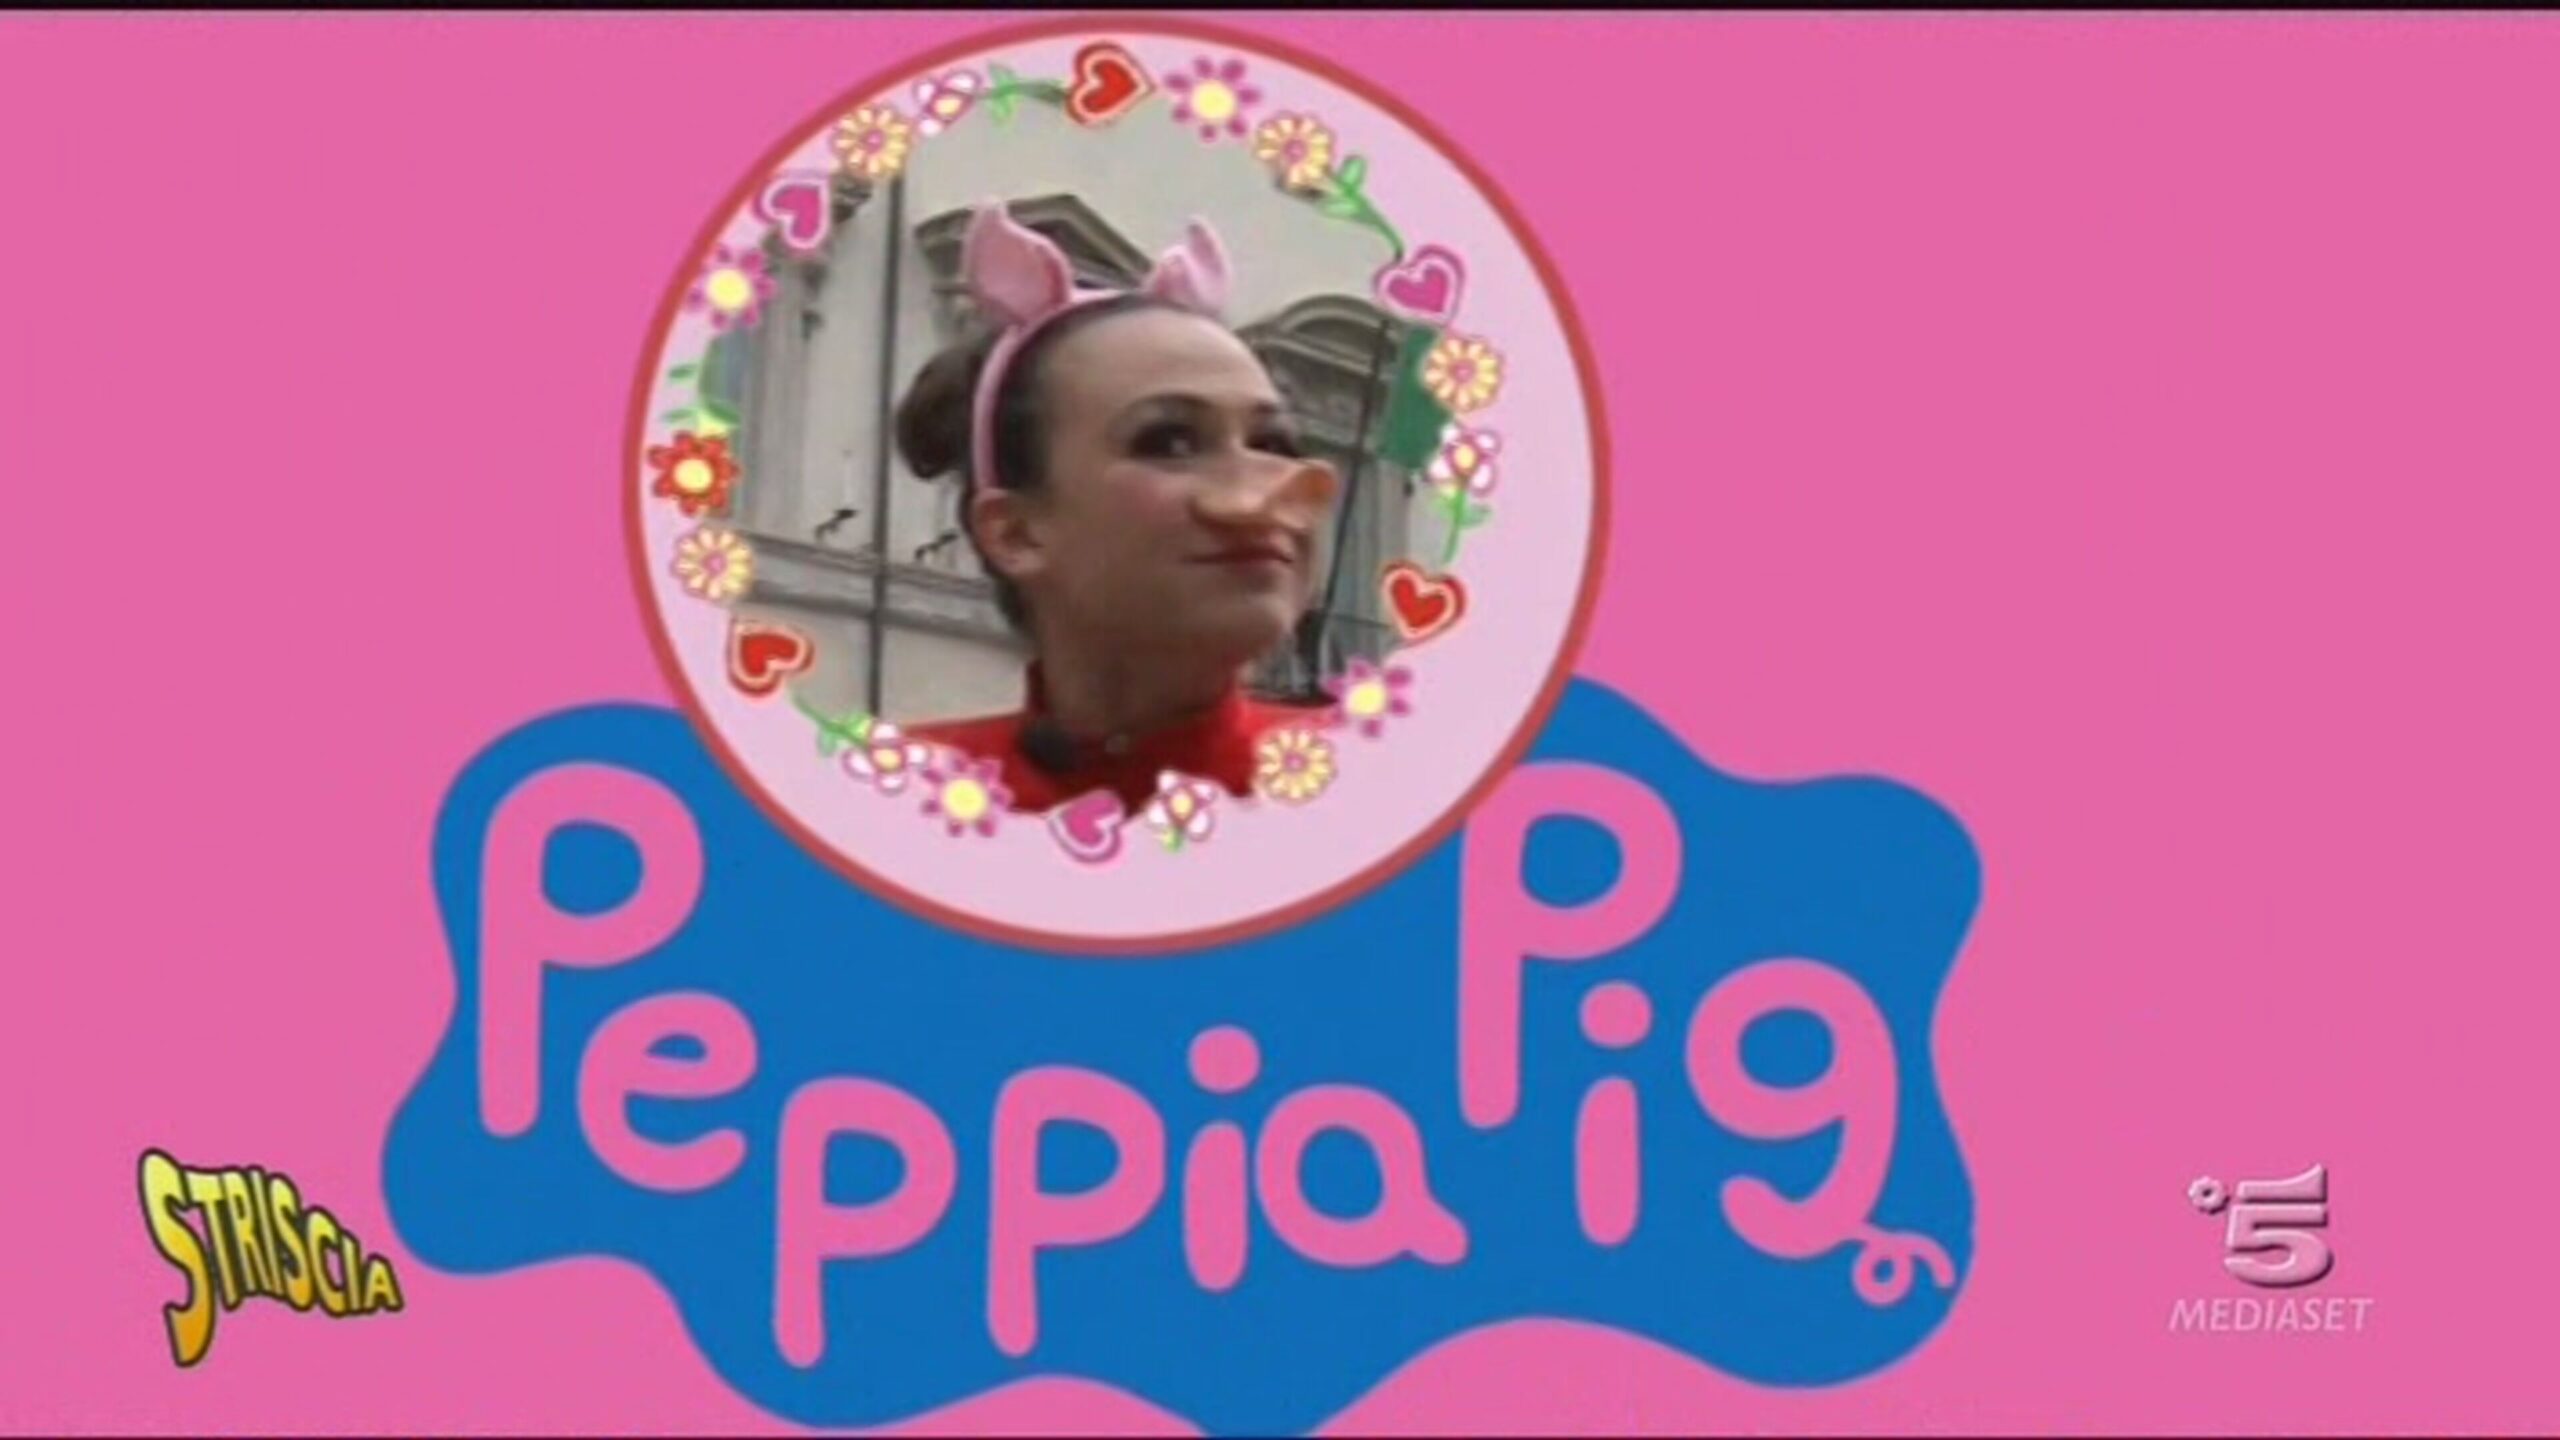 L'esordio di Peppia Pig alias Valeria Graci